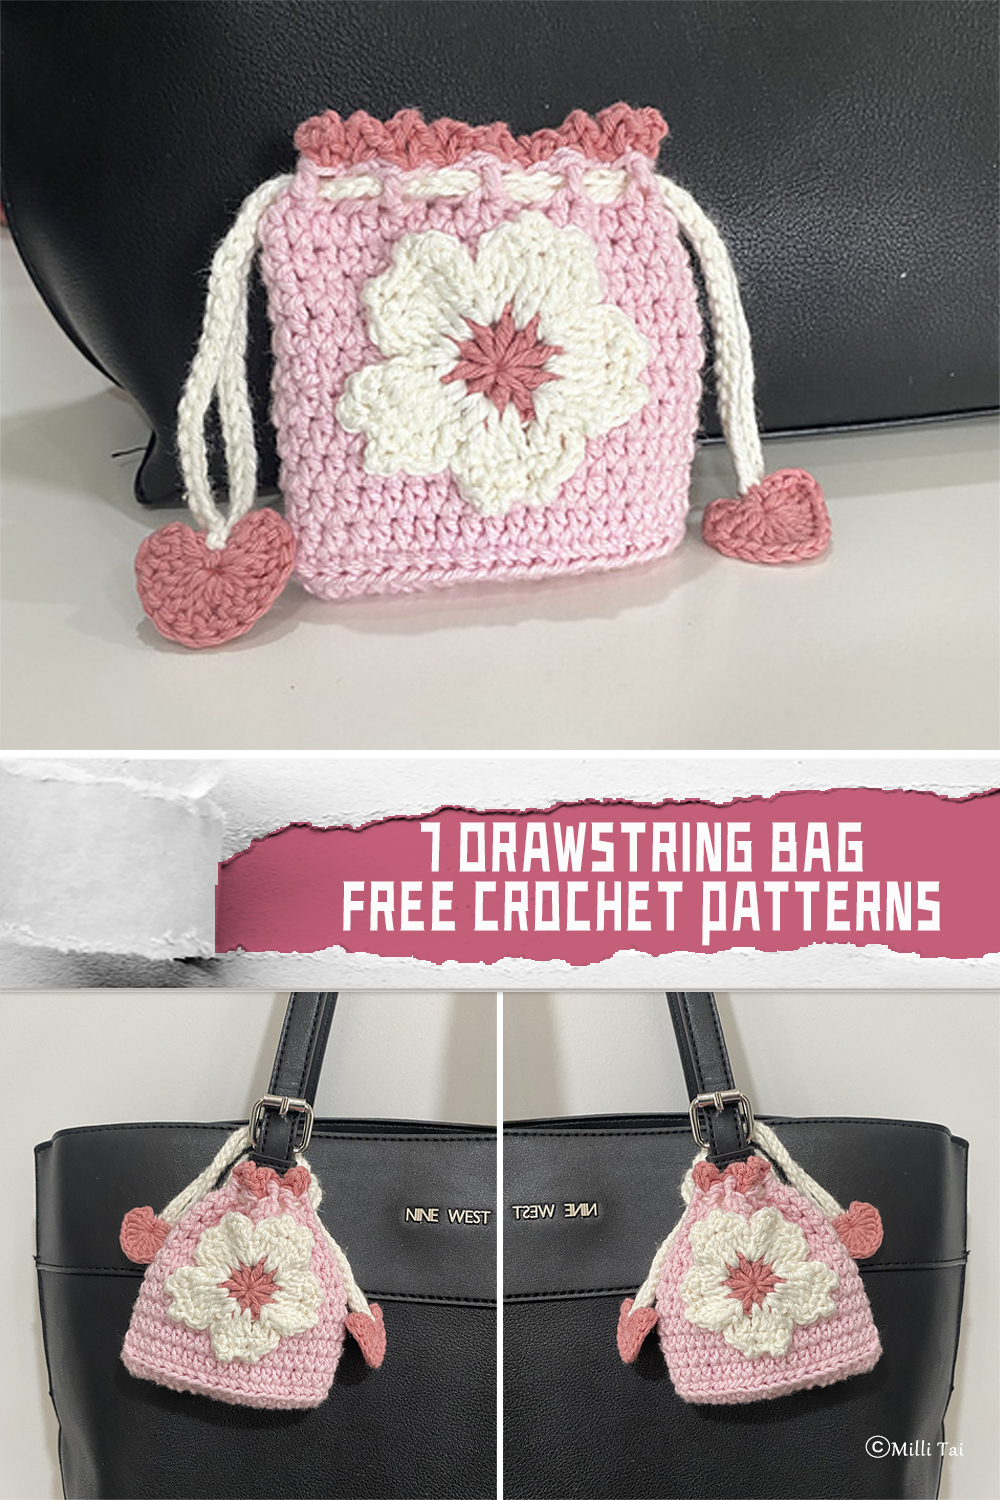 7 Drawstring Bag Crochet Patterns - FREE - iGOODideas.com